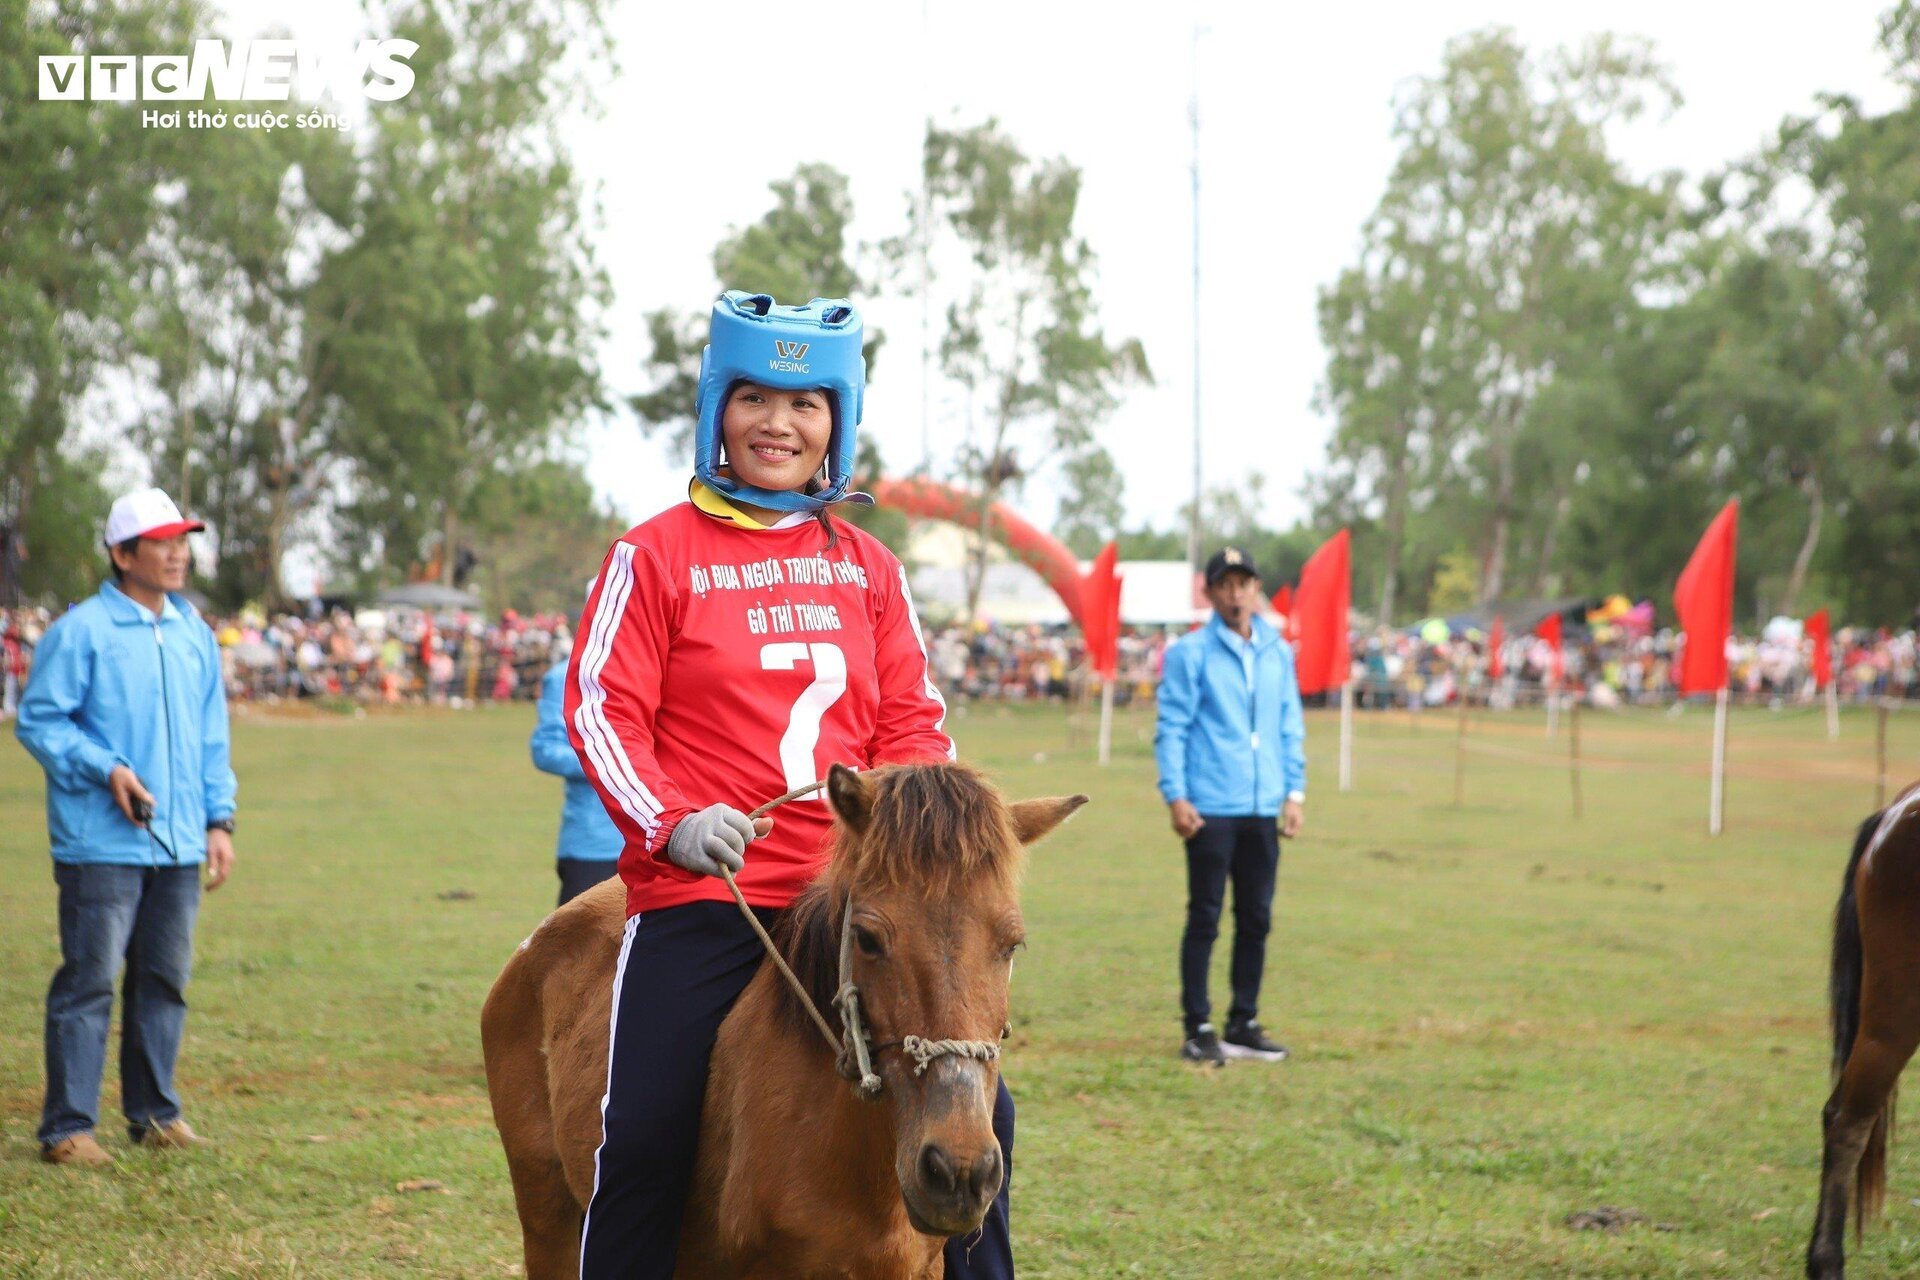 Xem nữ &quot;kỵ sĩ nông dân&quot; tranh tài tại lễ hội đua ngựa độc nhất vô nhị Phú Yên - Ảnh 4.